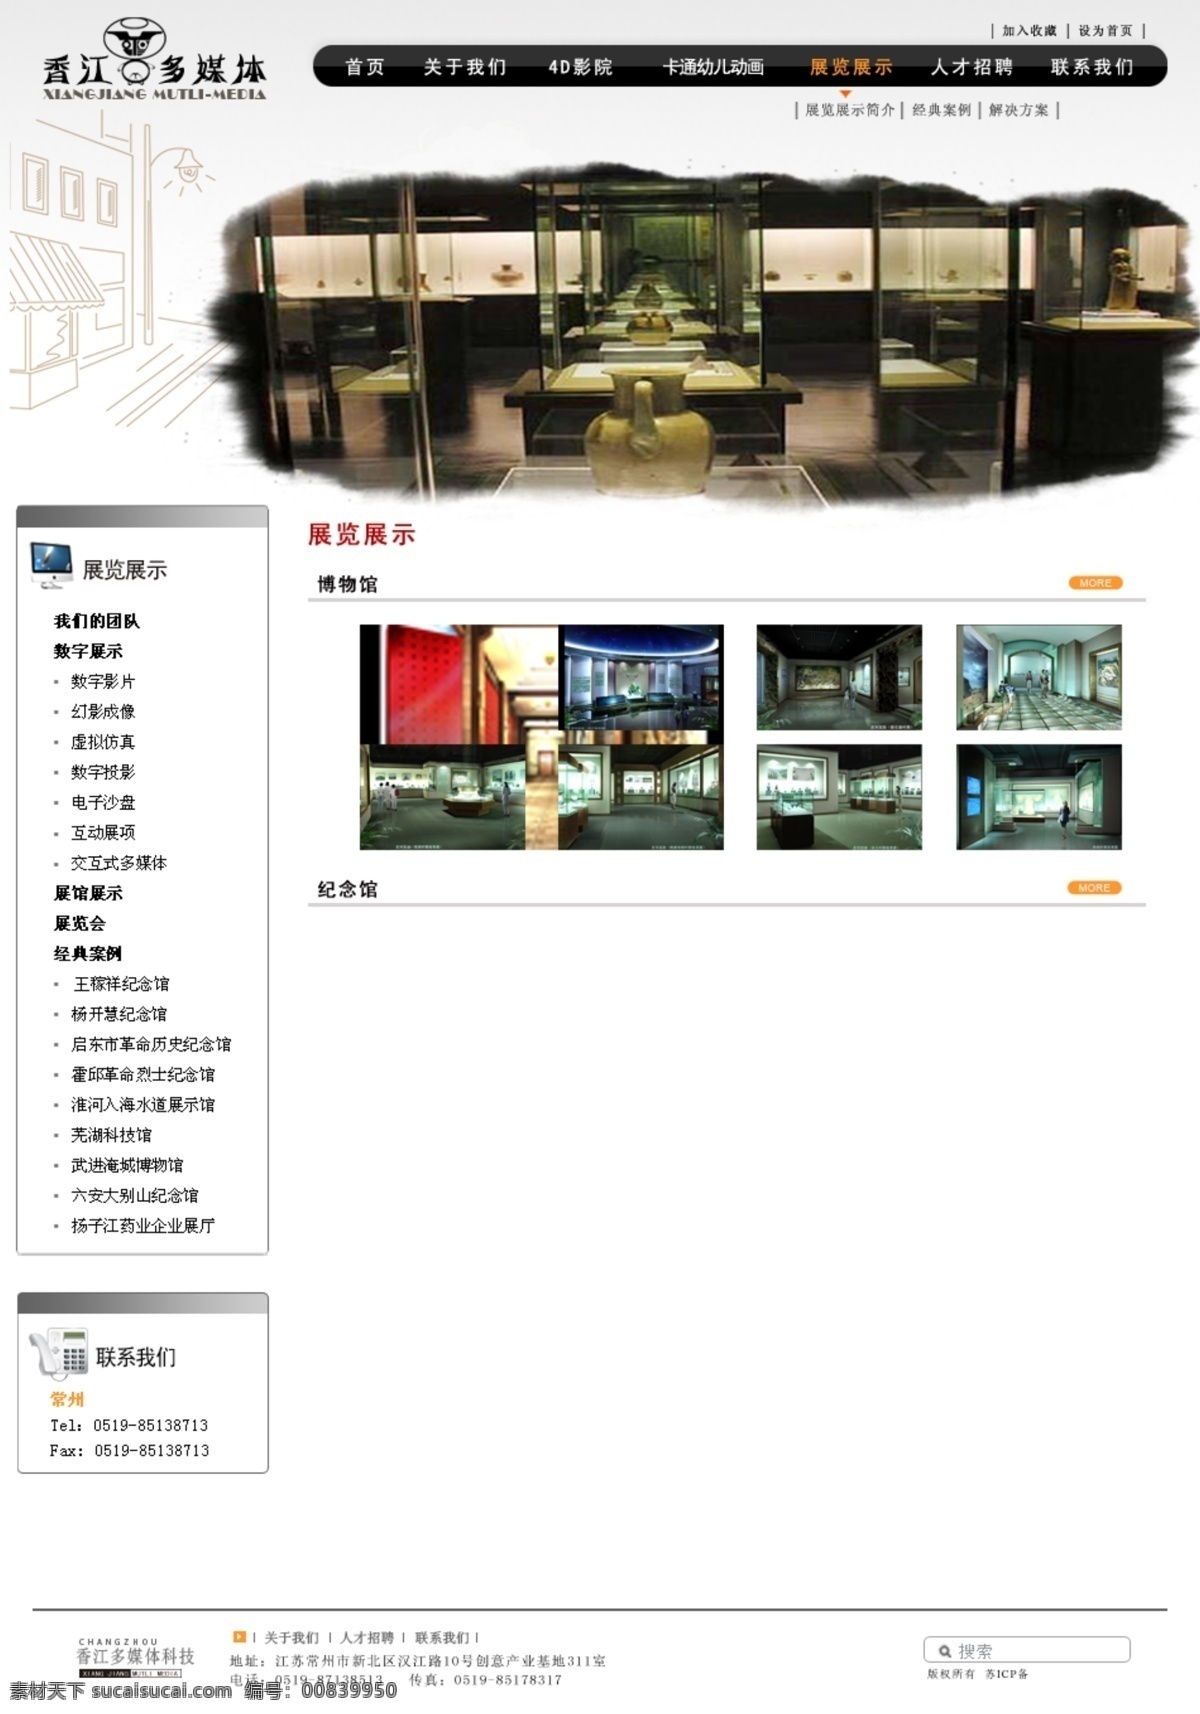 博物馆 展览 模板 导航 网页模板 网站模板 源文件 中文模版 陈列布展 子页 网页素材 导航菜单